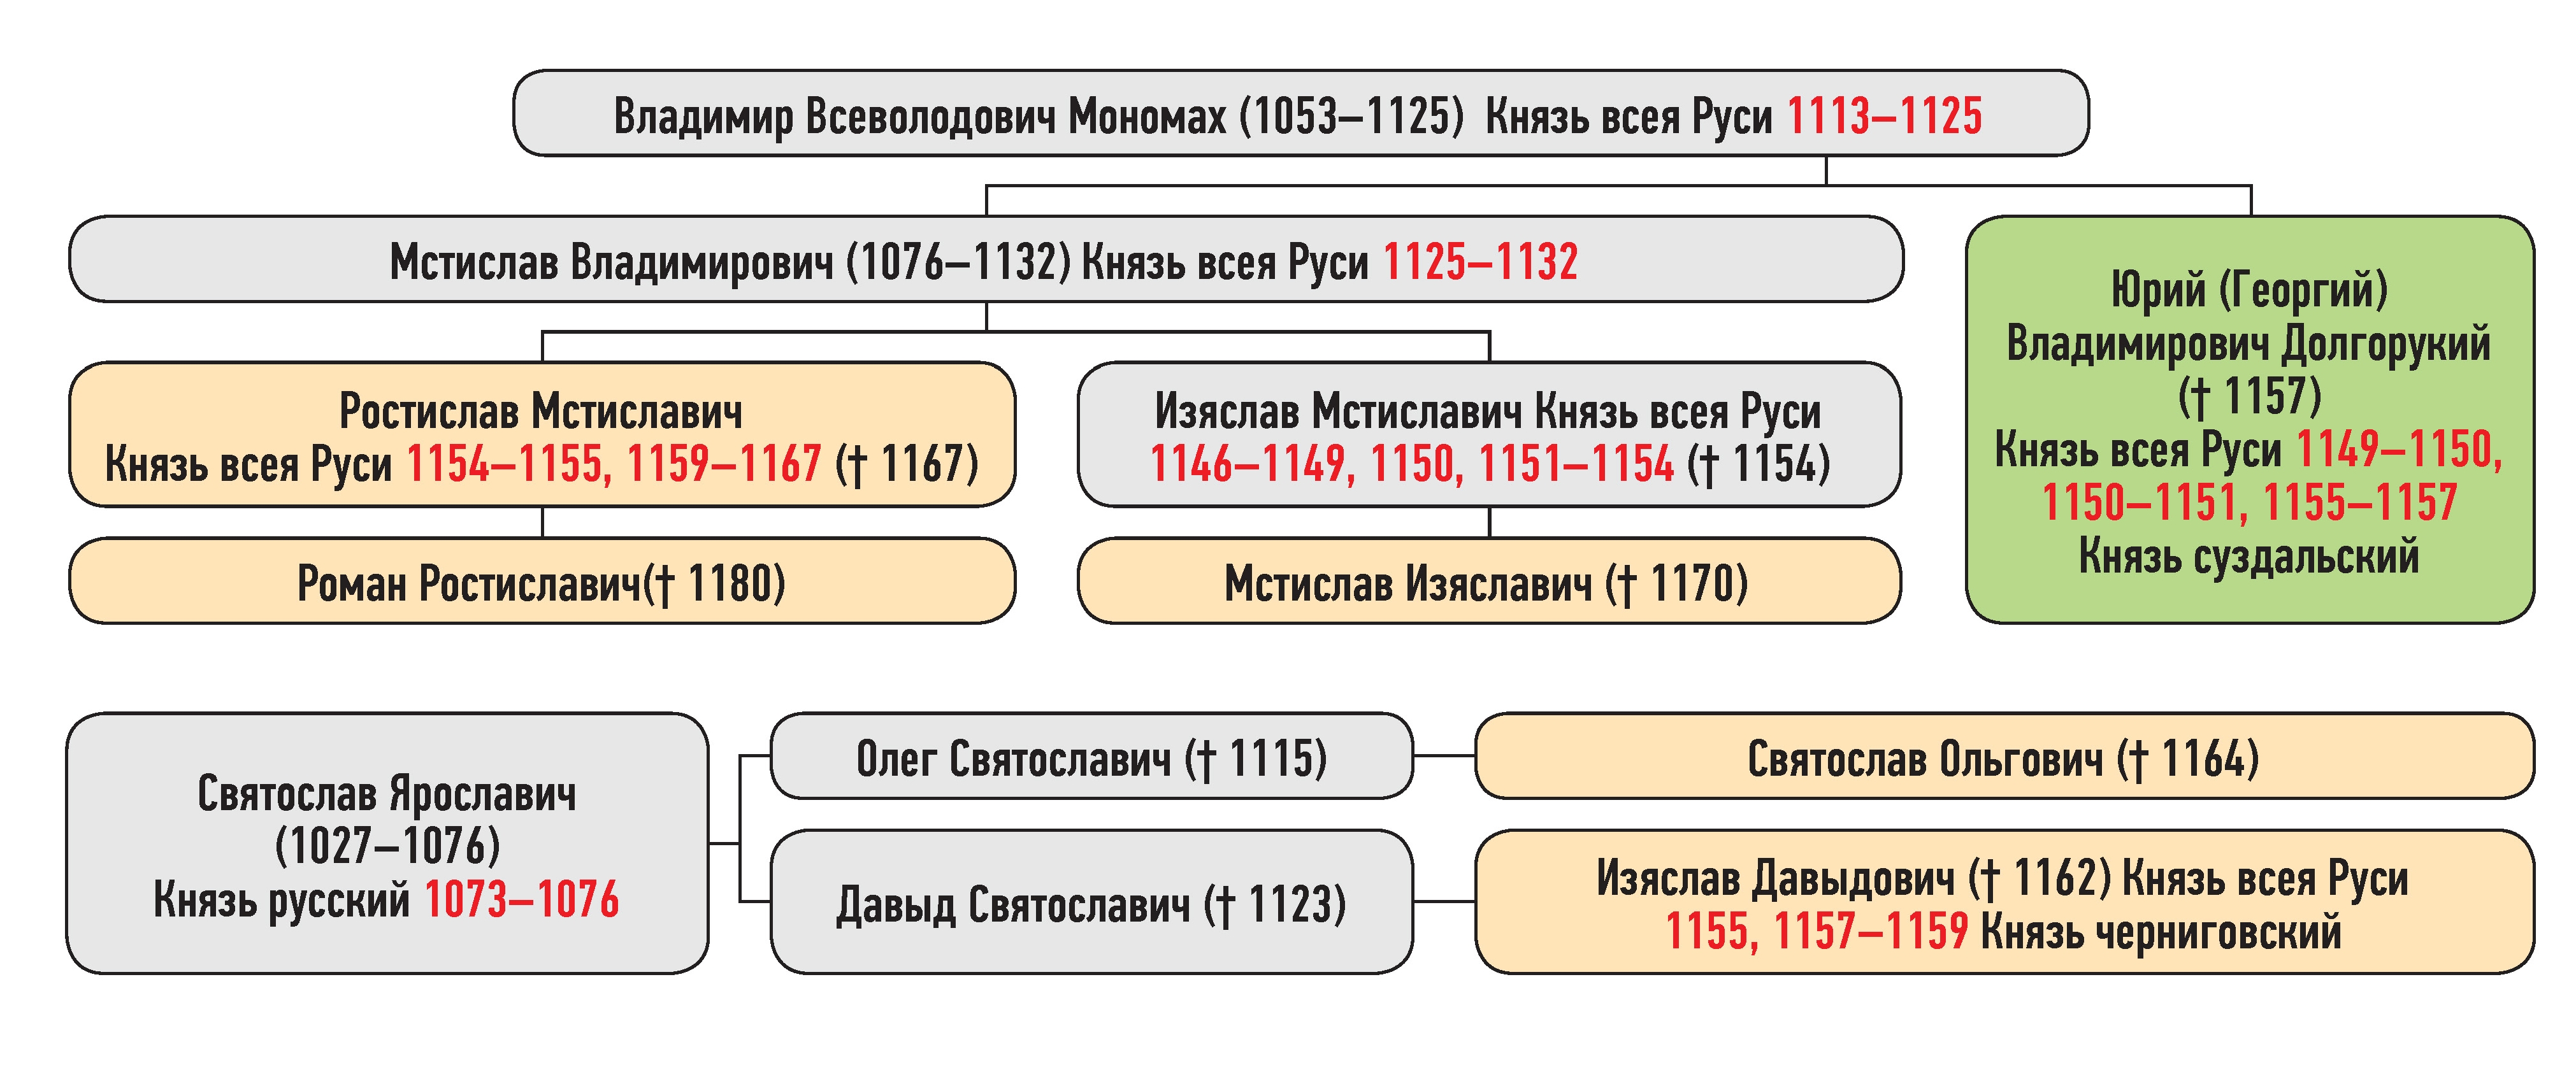 Генеалогическая схема к усобице Юрия Владимировича и Изяслава Давыдовича в мае 1157 г.